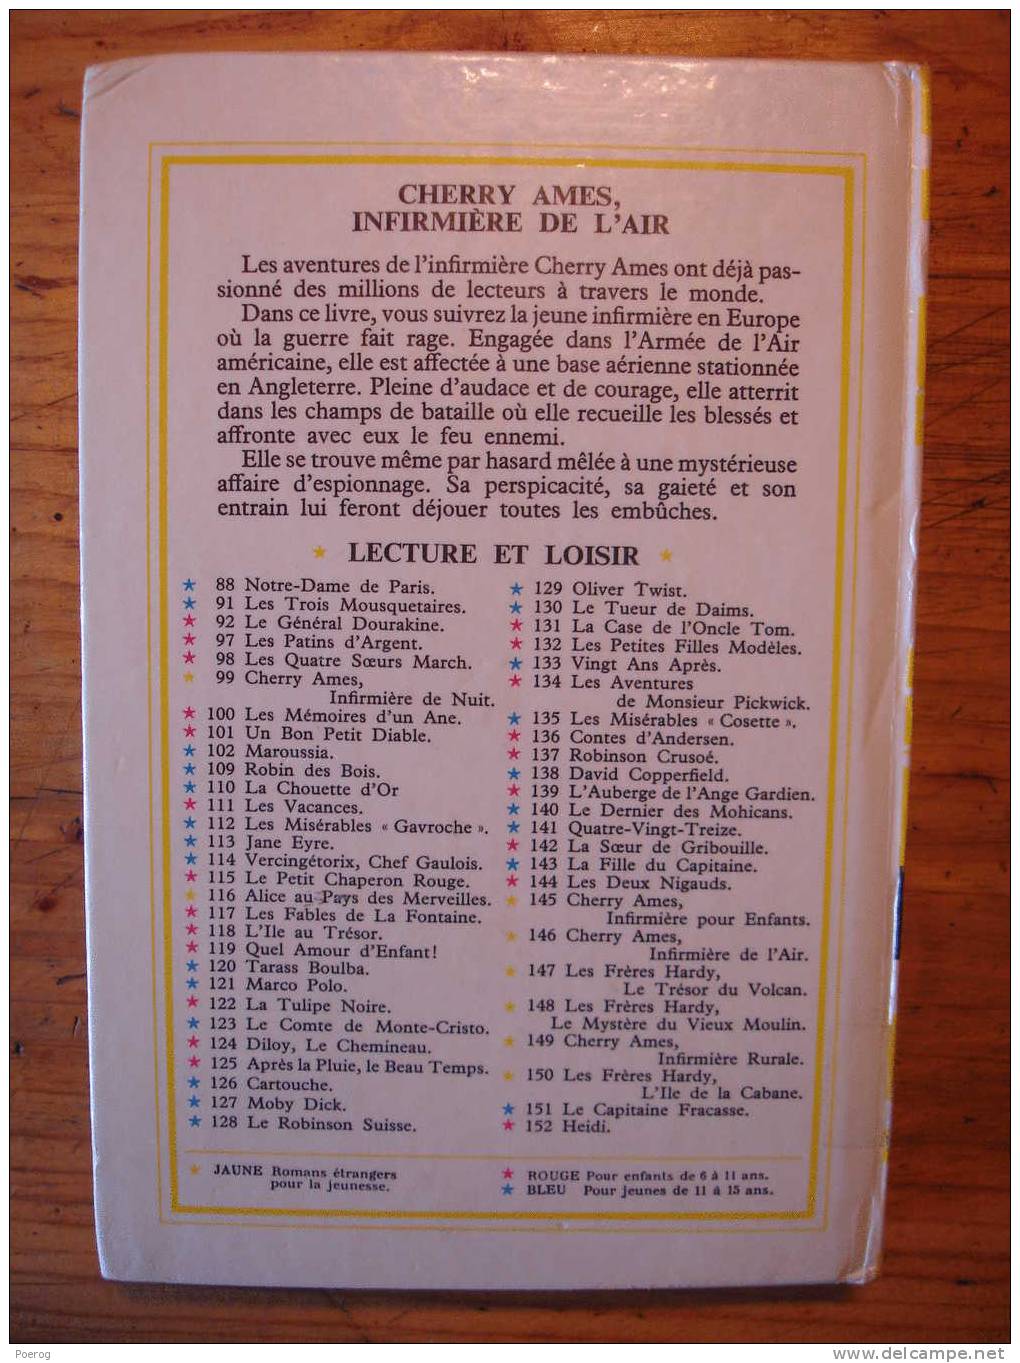 CHERRY AMES INFIRMIERE DE L'AIR - HELEN WELLS - LECTURE ET LOISIR N°146 - LIBRAIRIE CHARPENTIER PARIS - 1970 - BRIENT - Collection Lectures Et Loisirs